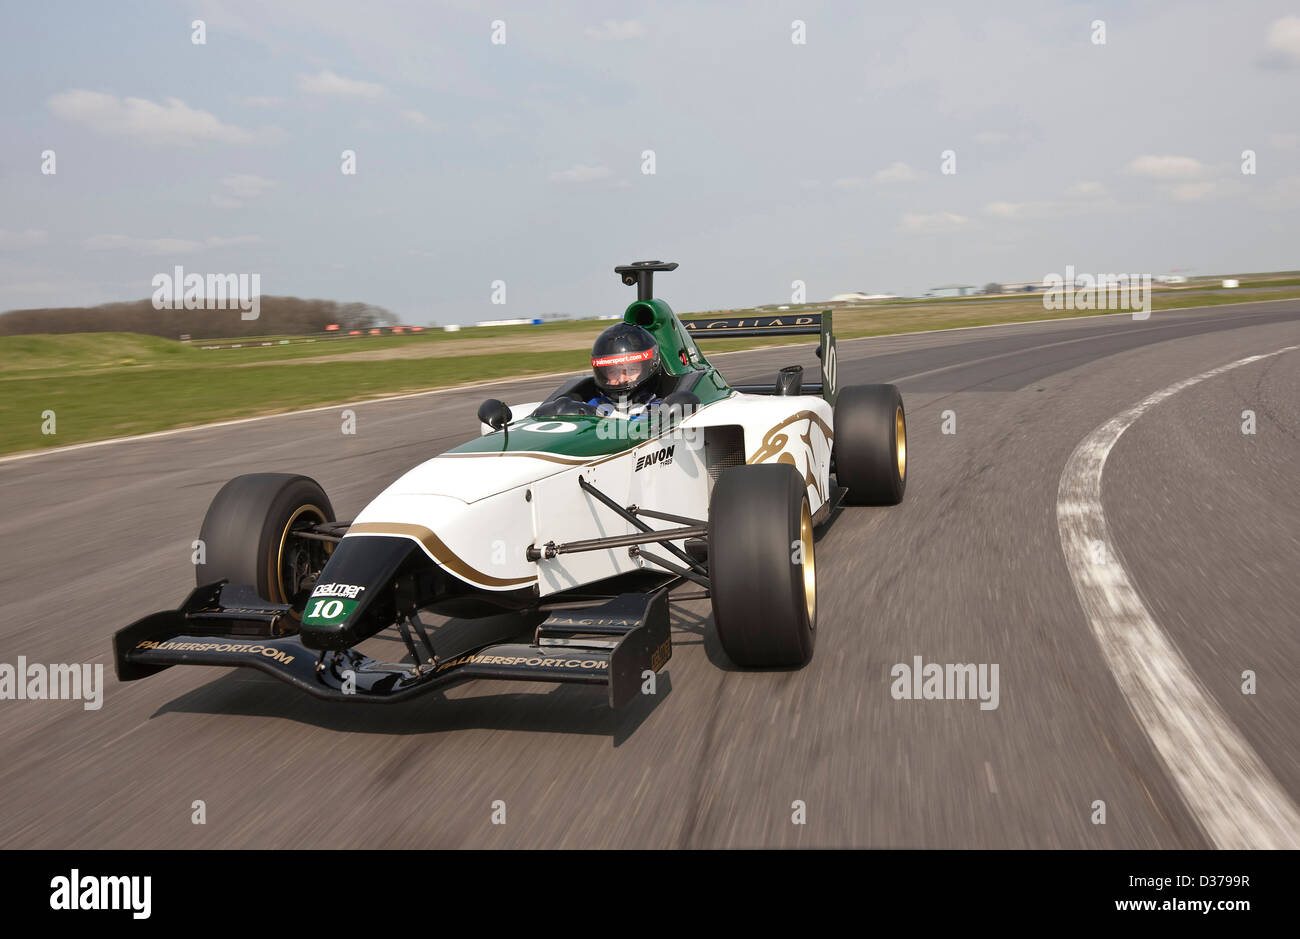 James Martin au volant de voiture de course de Formule 1 Jaguar, Bedford, Royaume-Uni 12 04 10 Banque D'Images